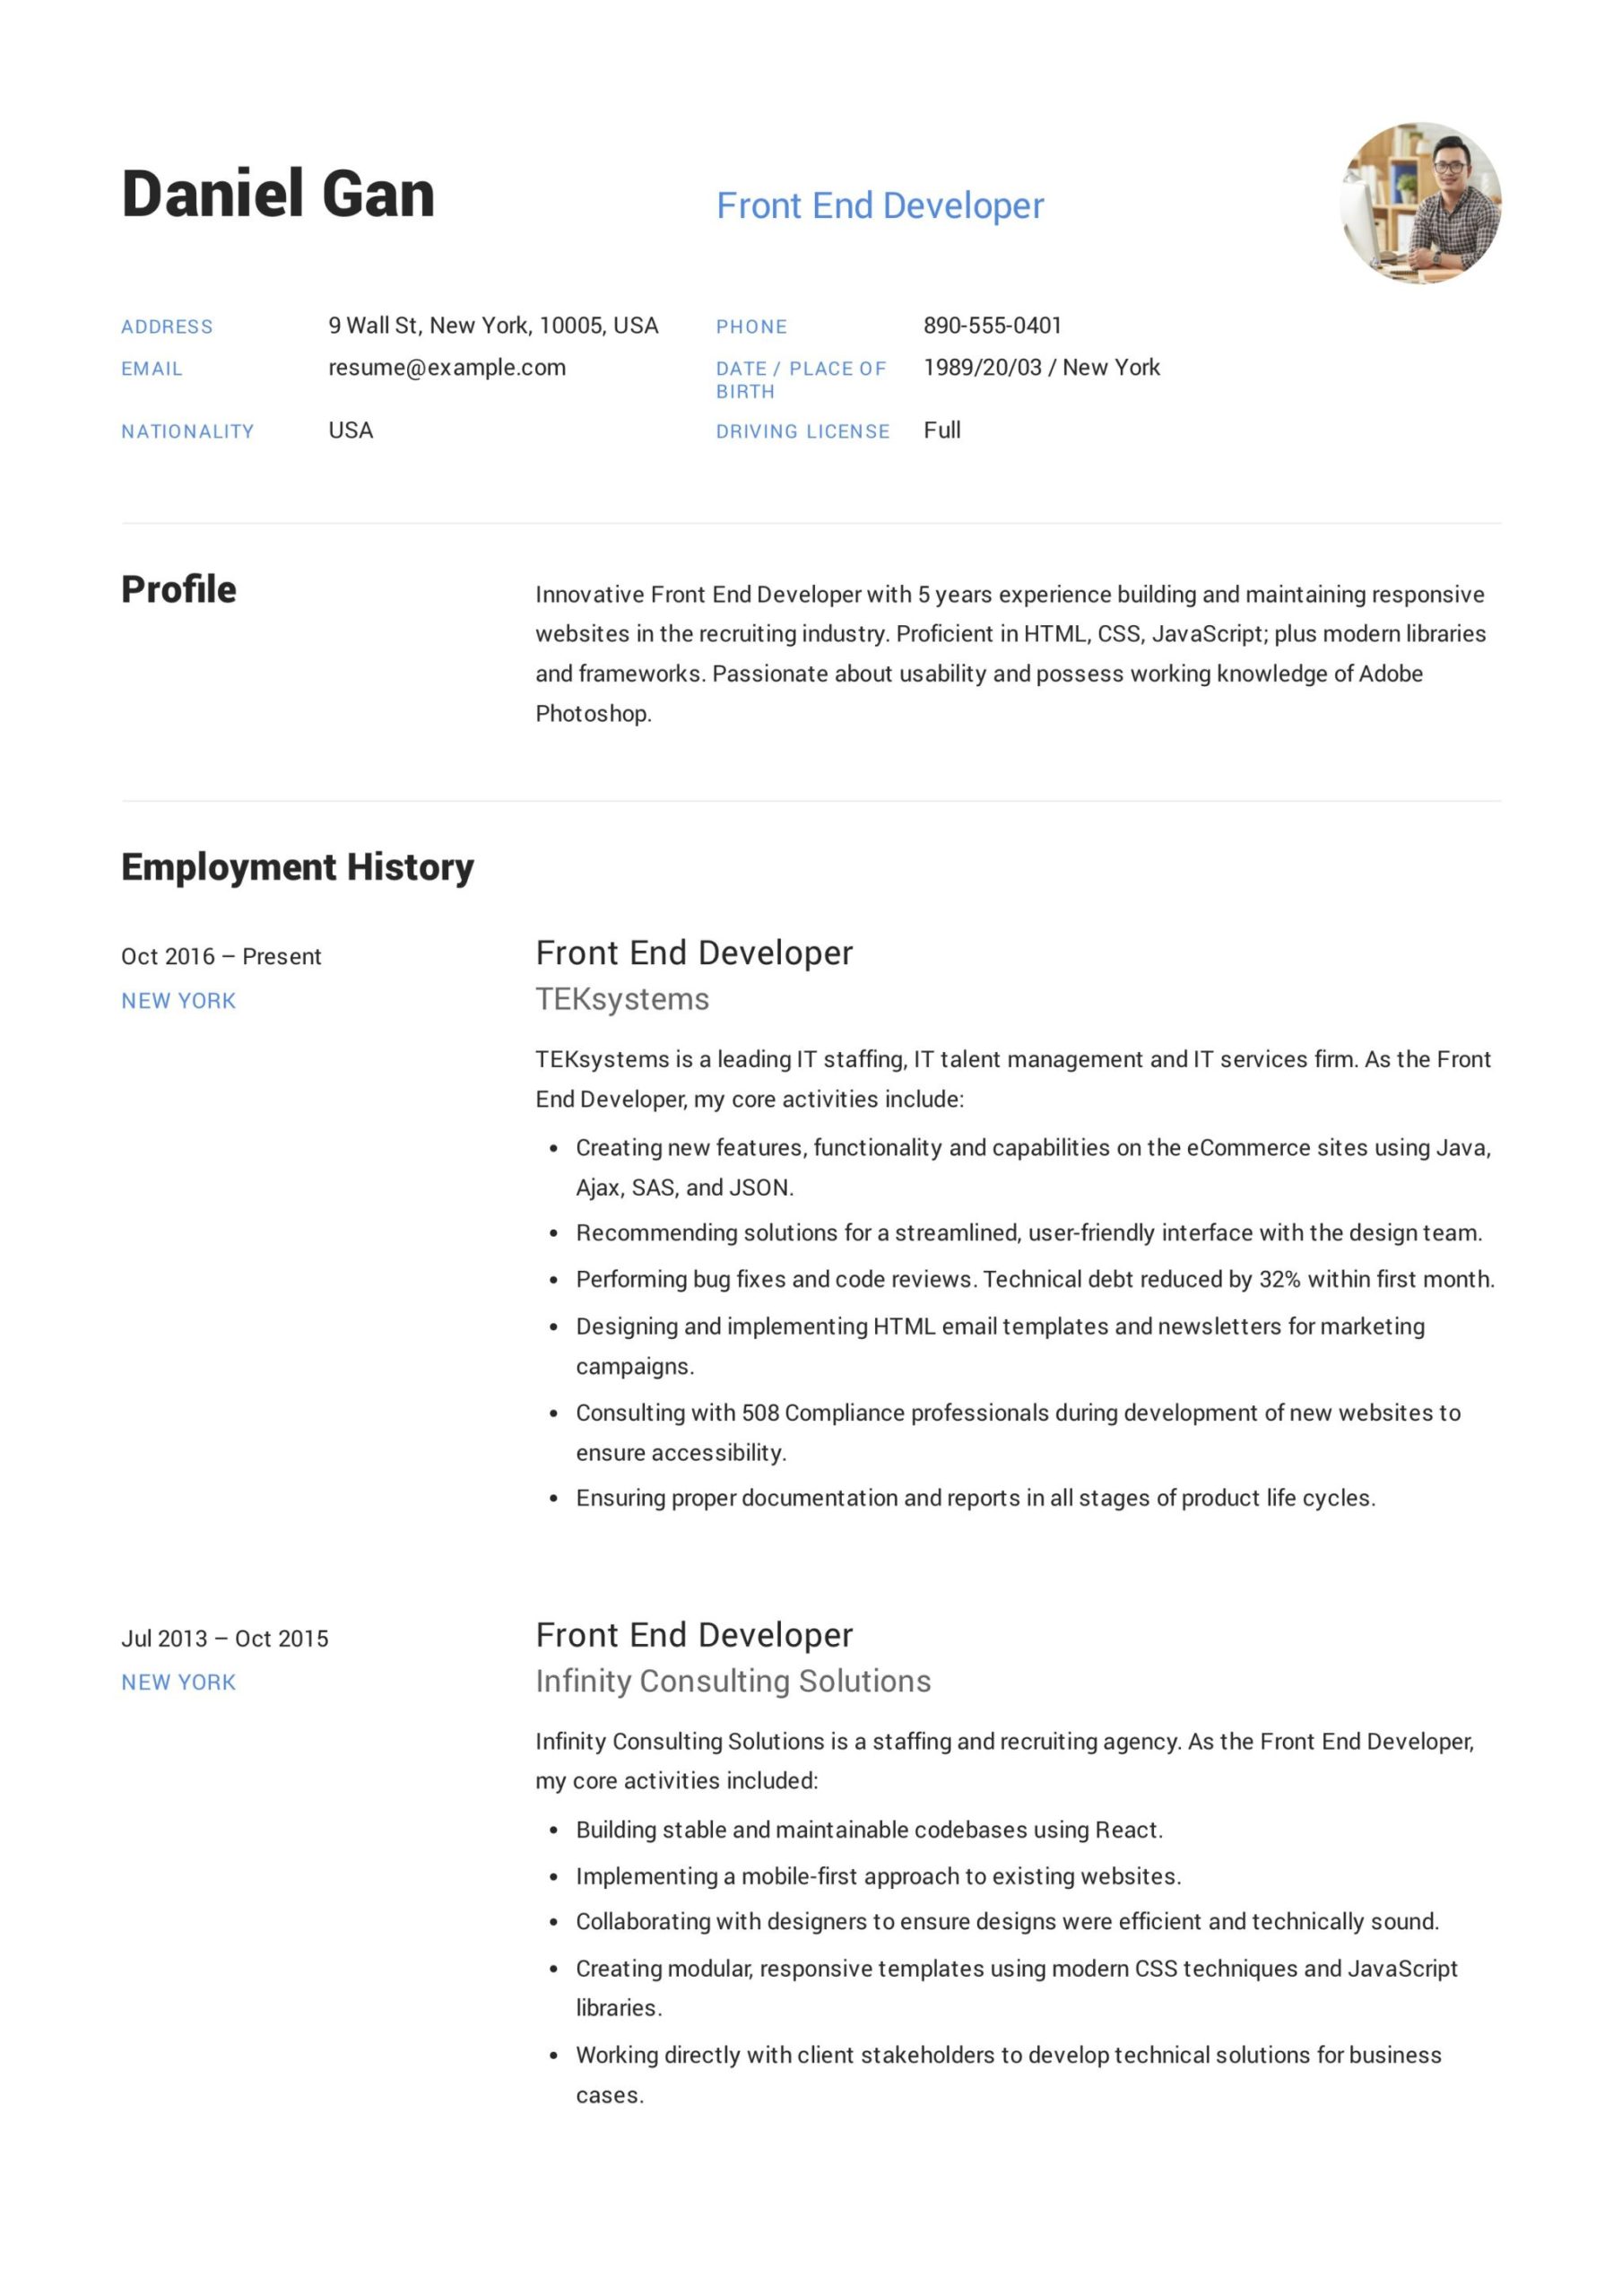 Junior Front End Web Developer Resume Sample 17 Front-end Developer Resume Examples & Guide Pdf 2022